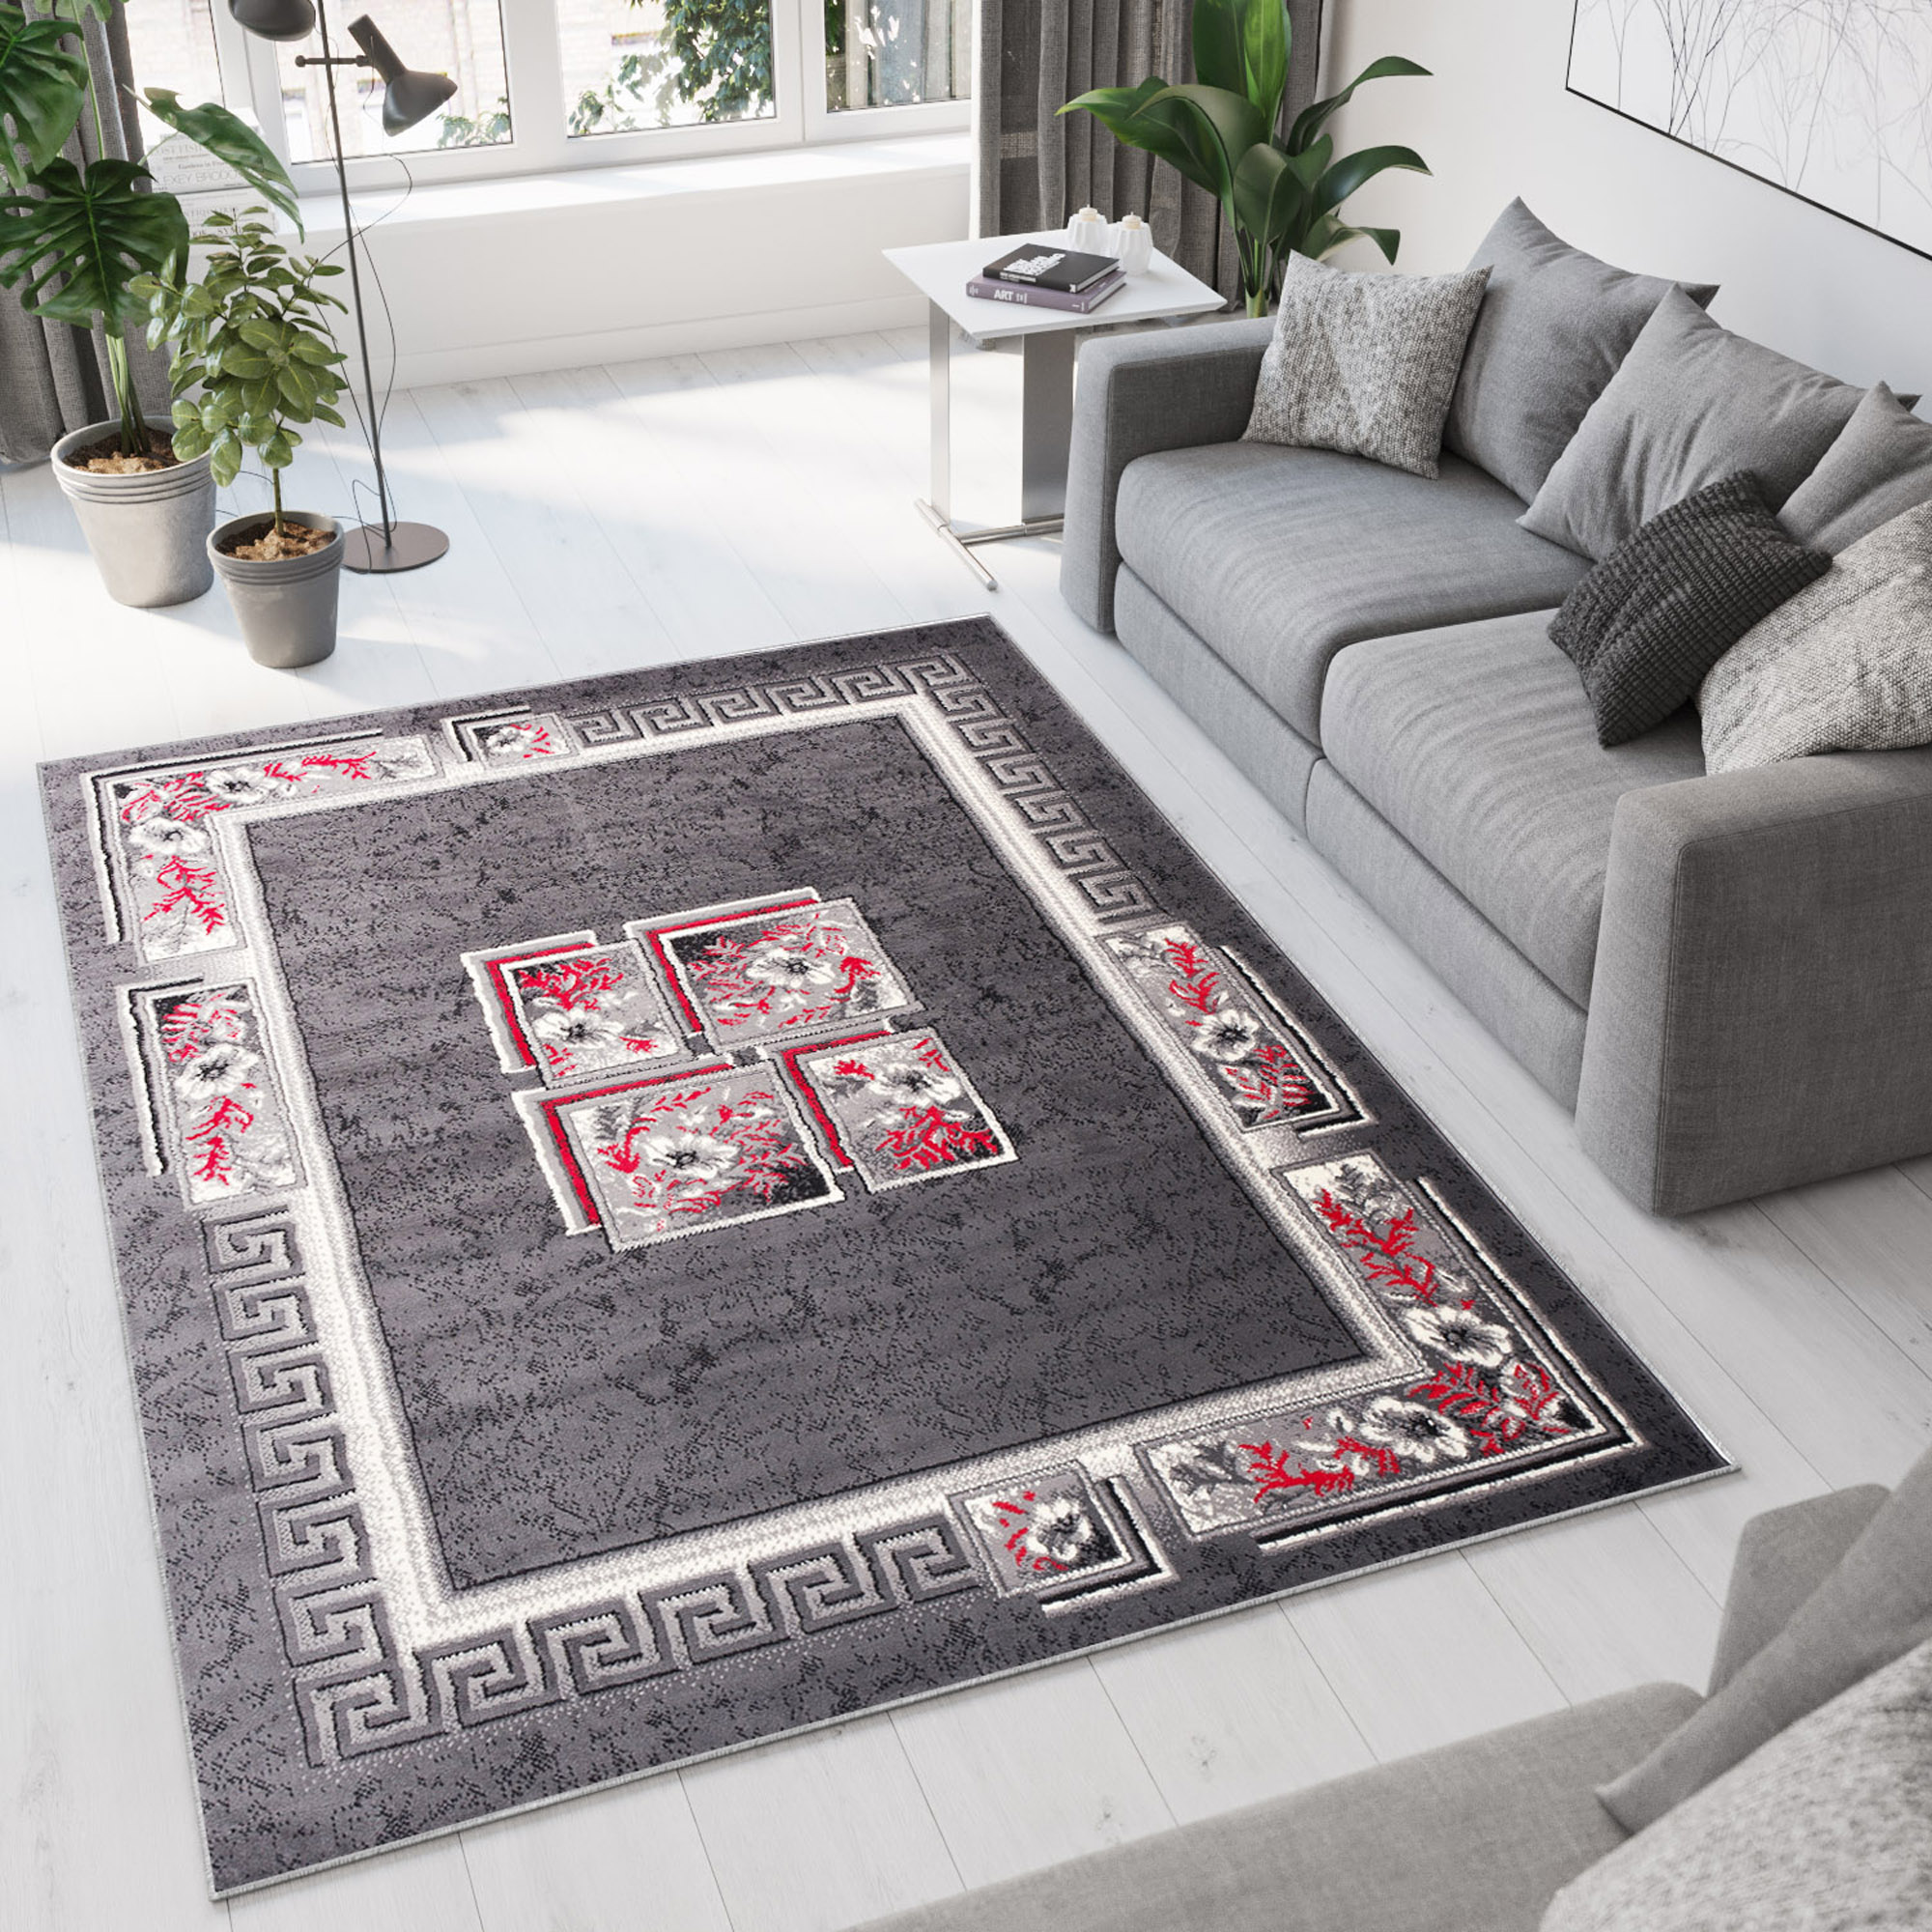 Teppich Kurzflor Modern Orientalisch FloralWohnzimmer Schlafzimmer Design ÖKOTEX 